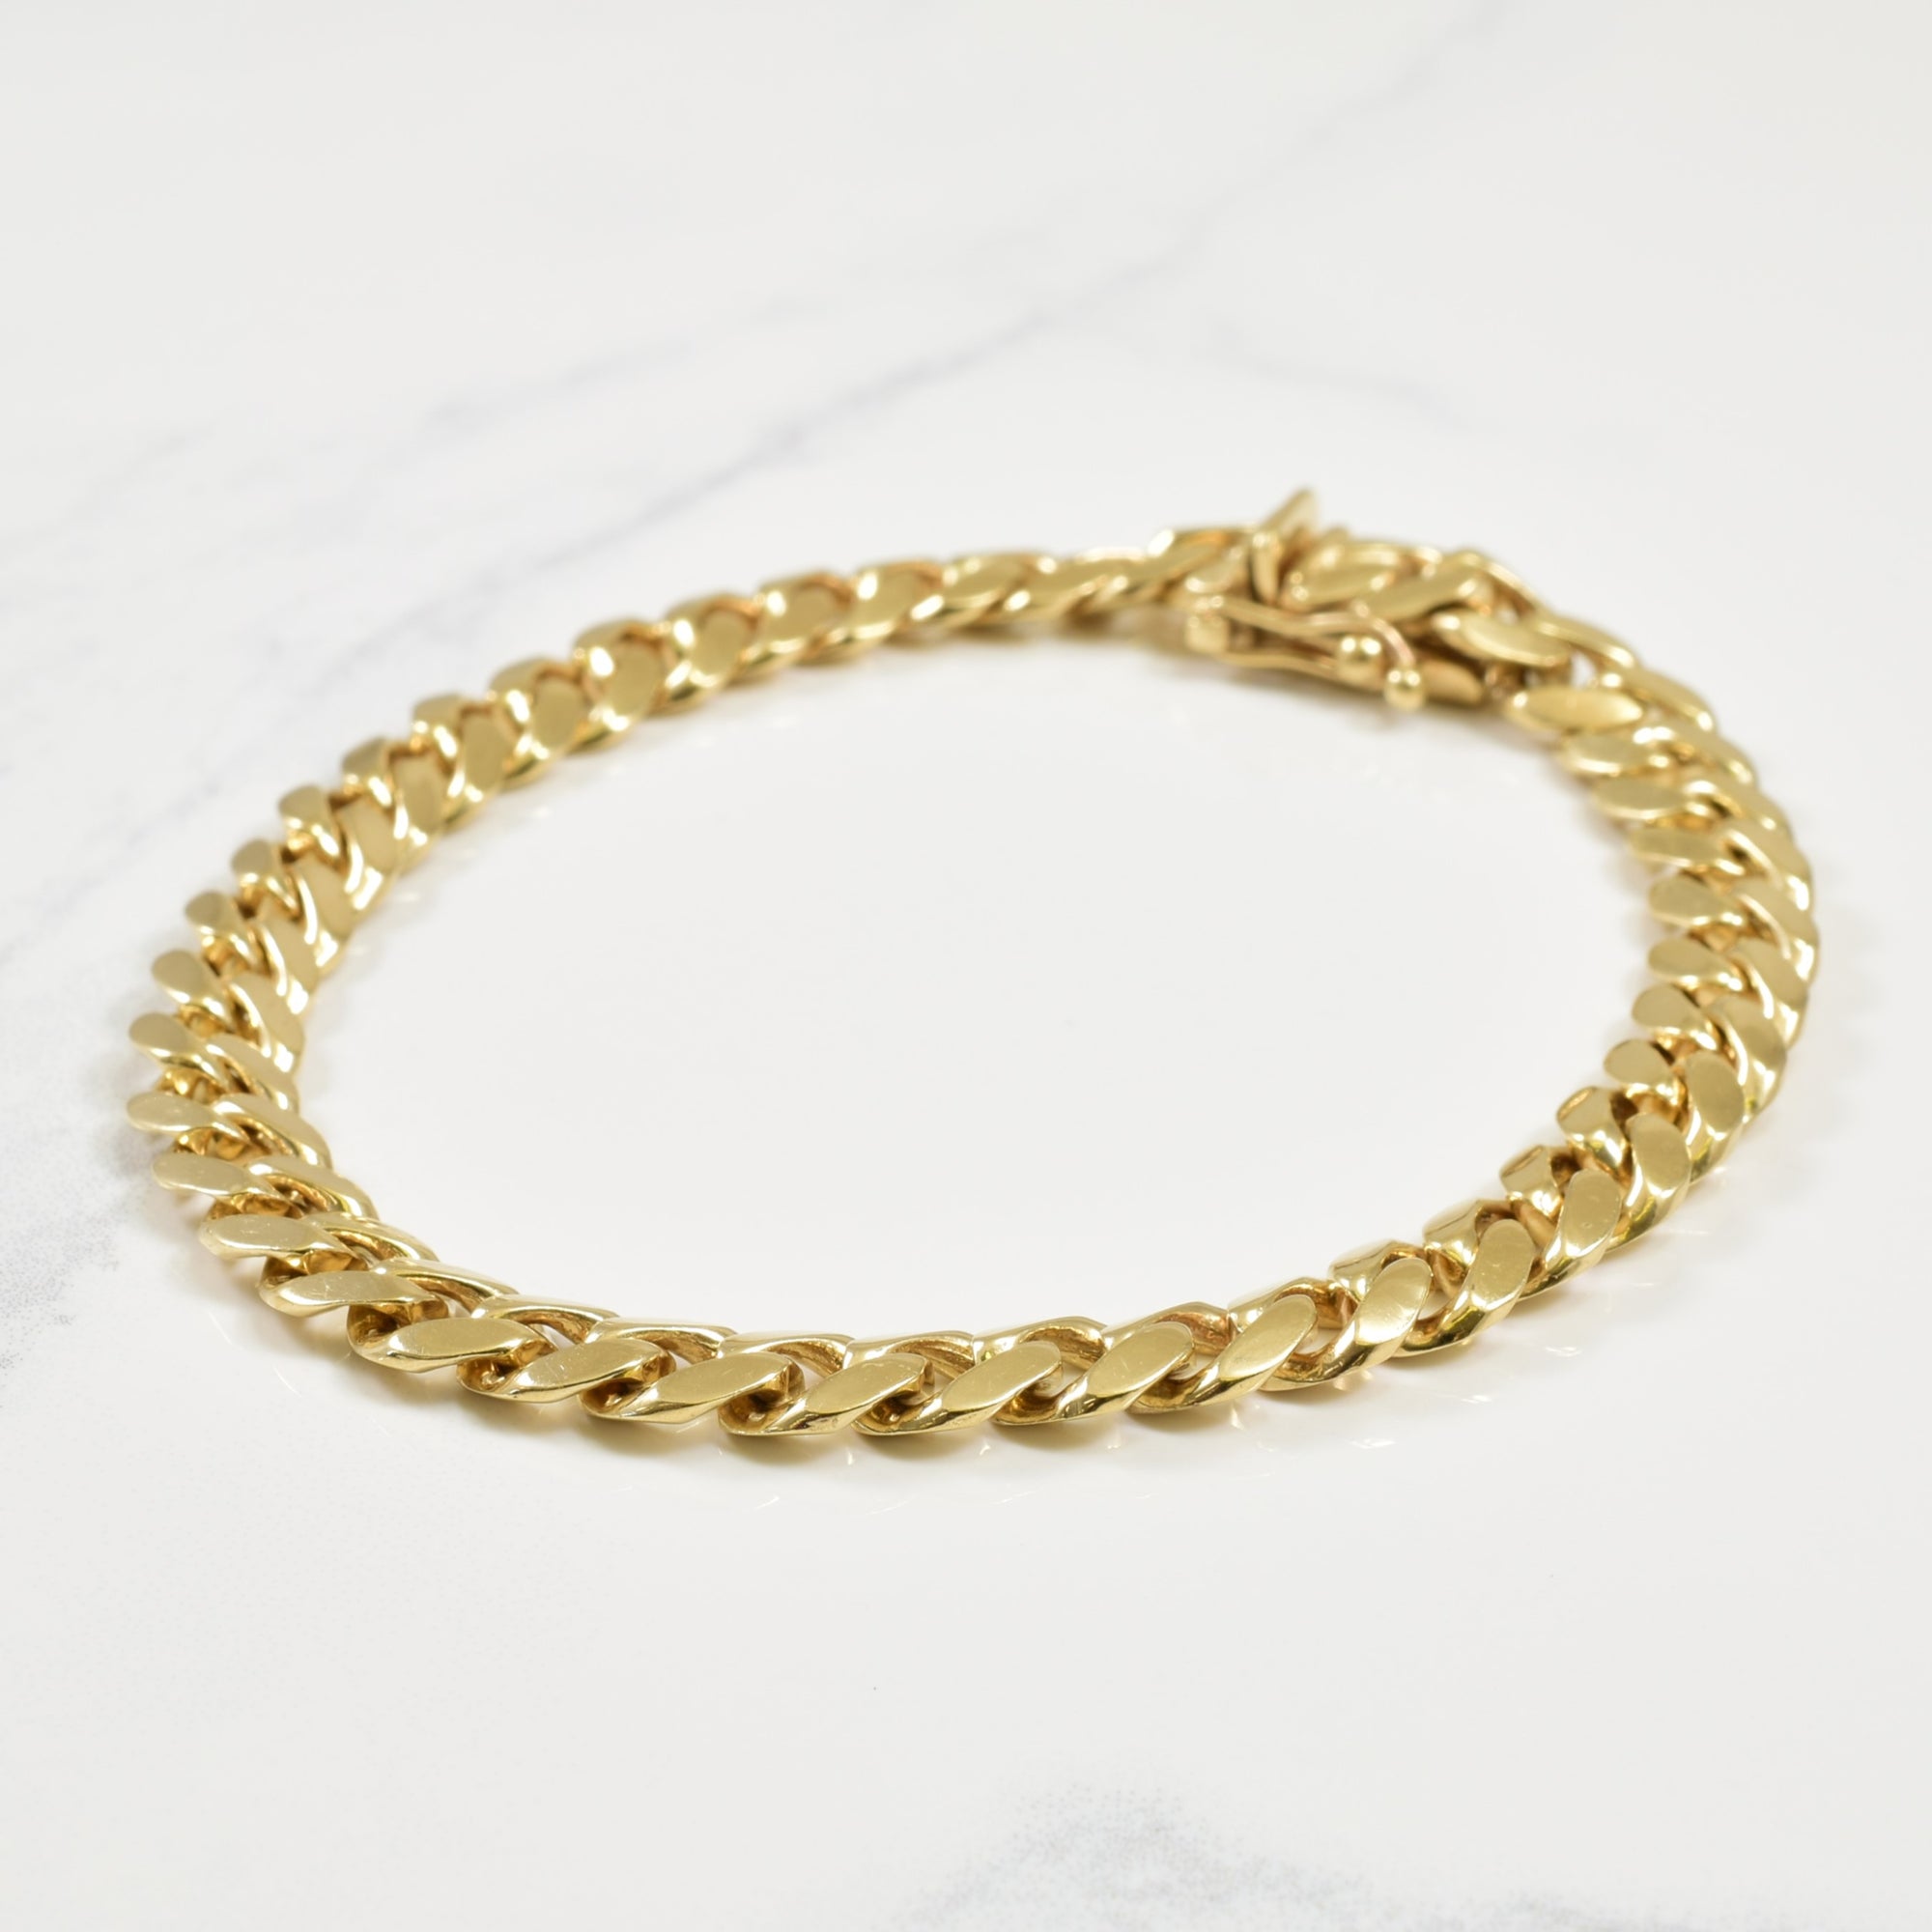 10K Miami Cuban Link Bracelet - 10mm – Garcia's Jewelry Miami